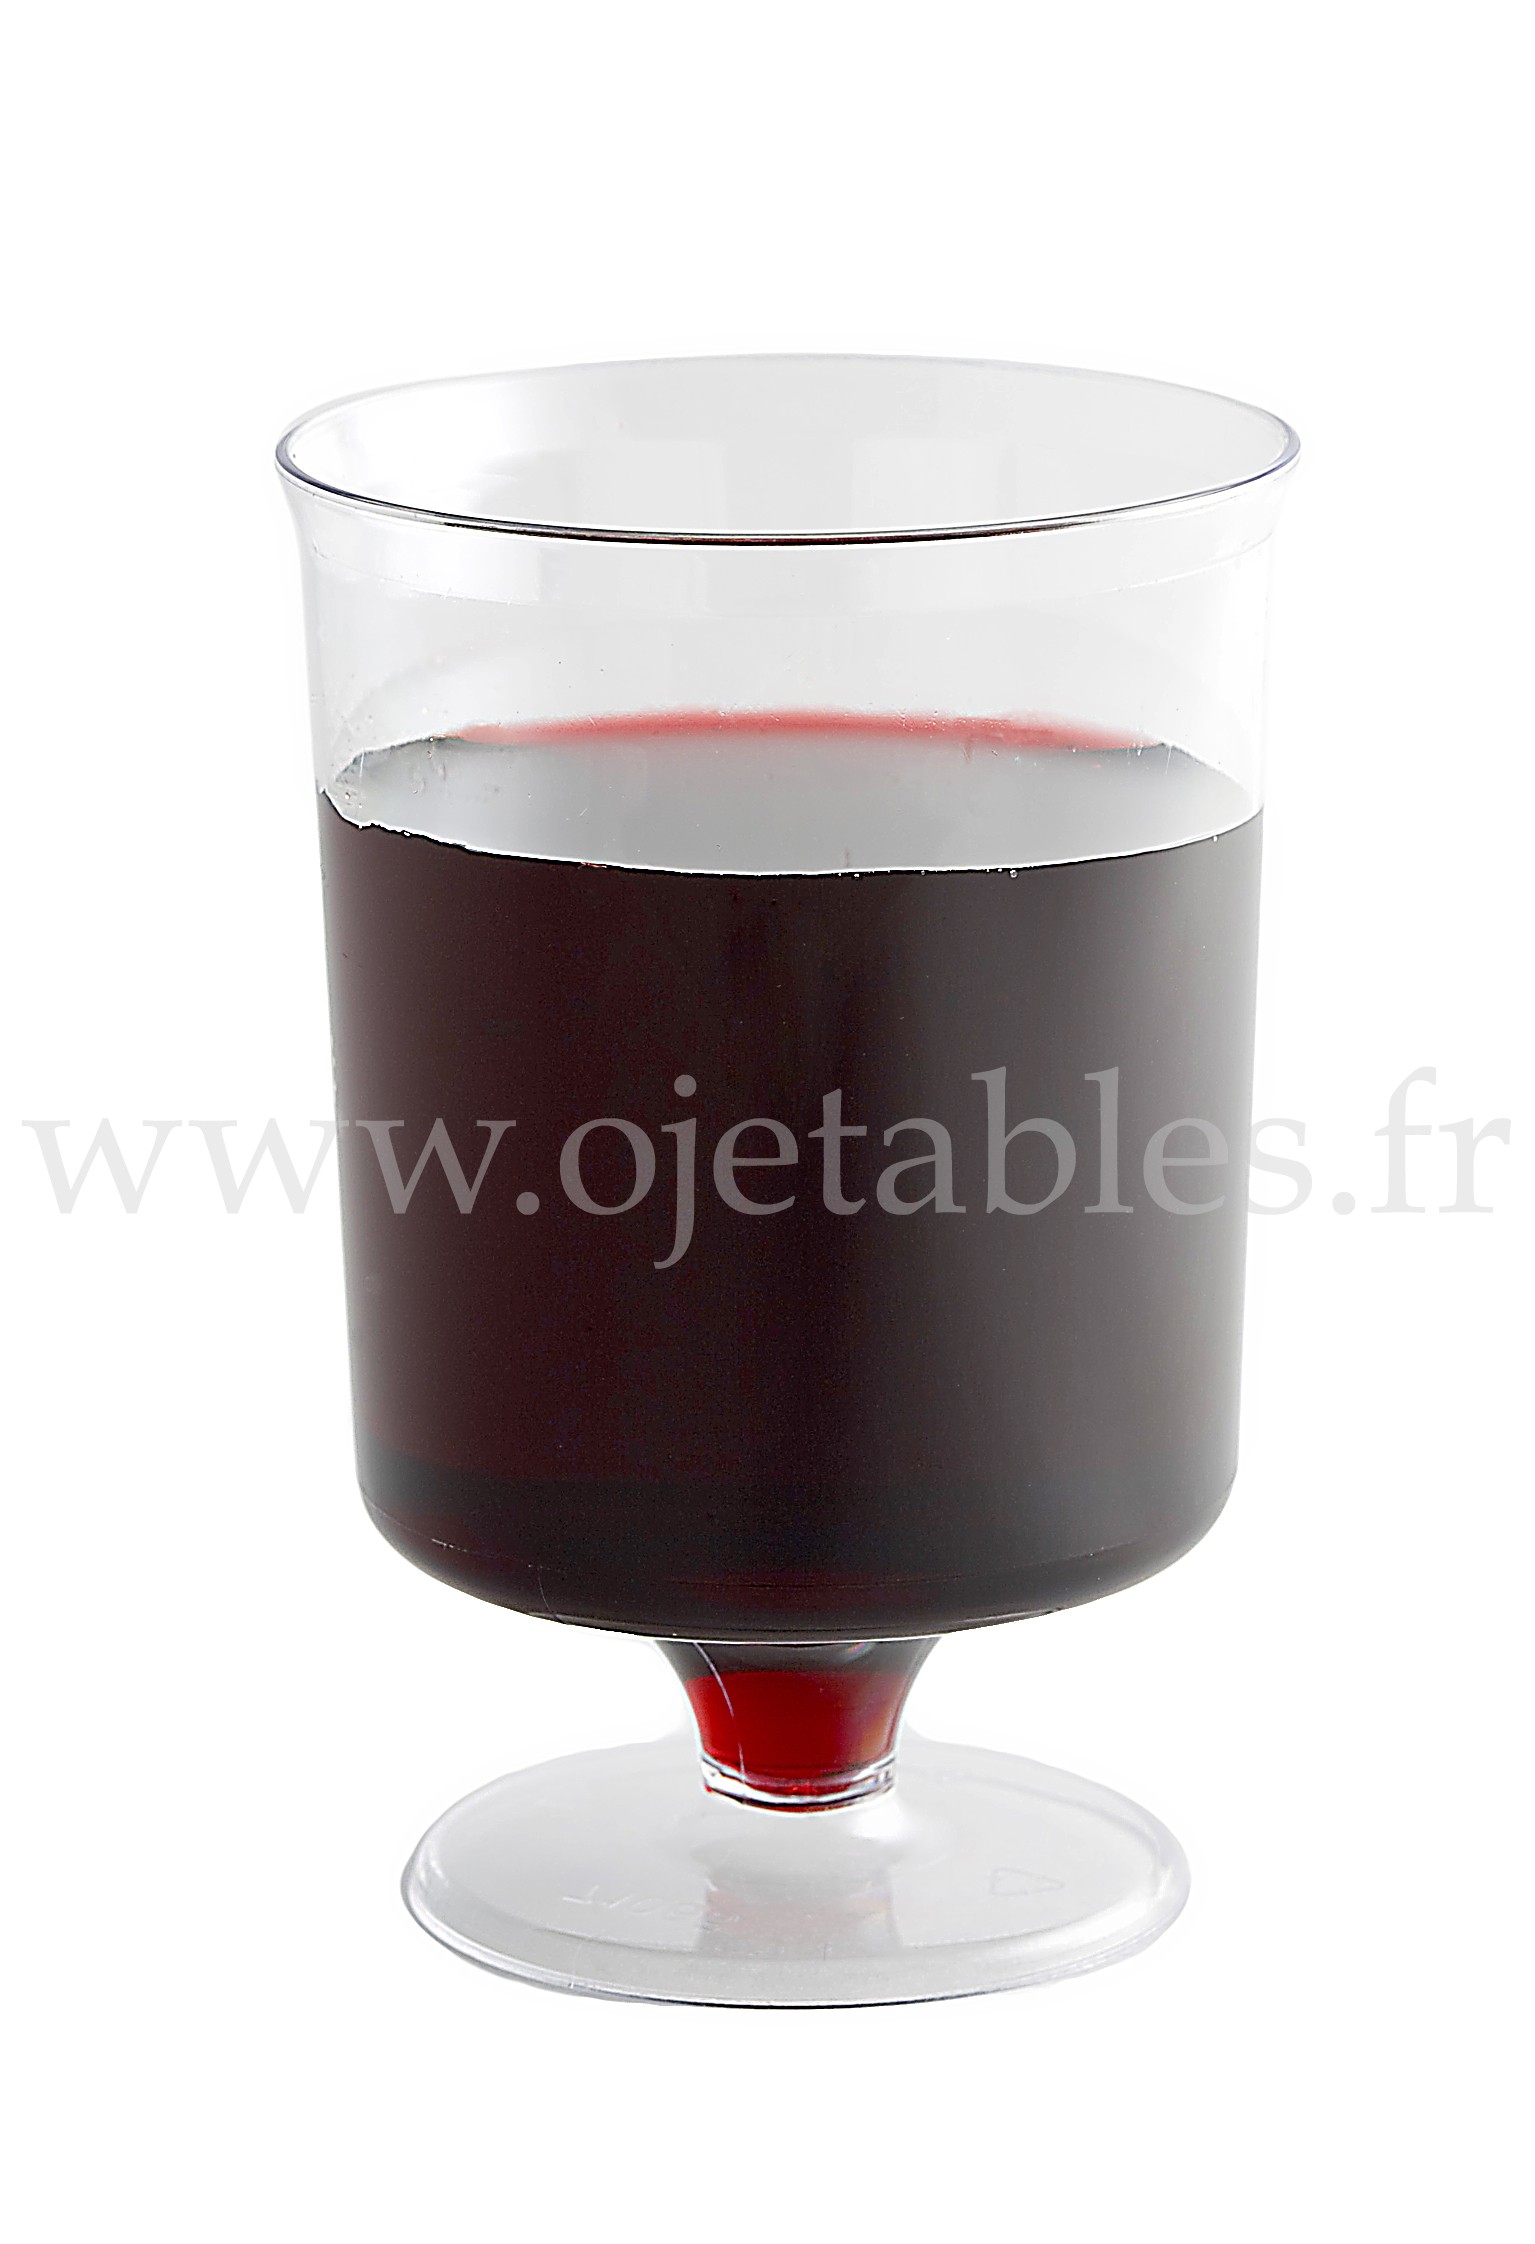 6 verres à vin design plastique rigide chocolat 15 cl